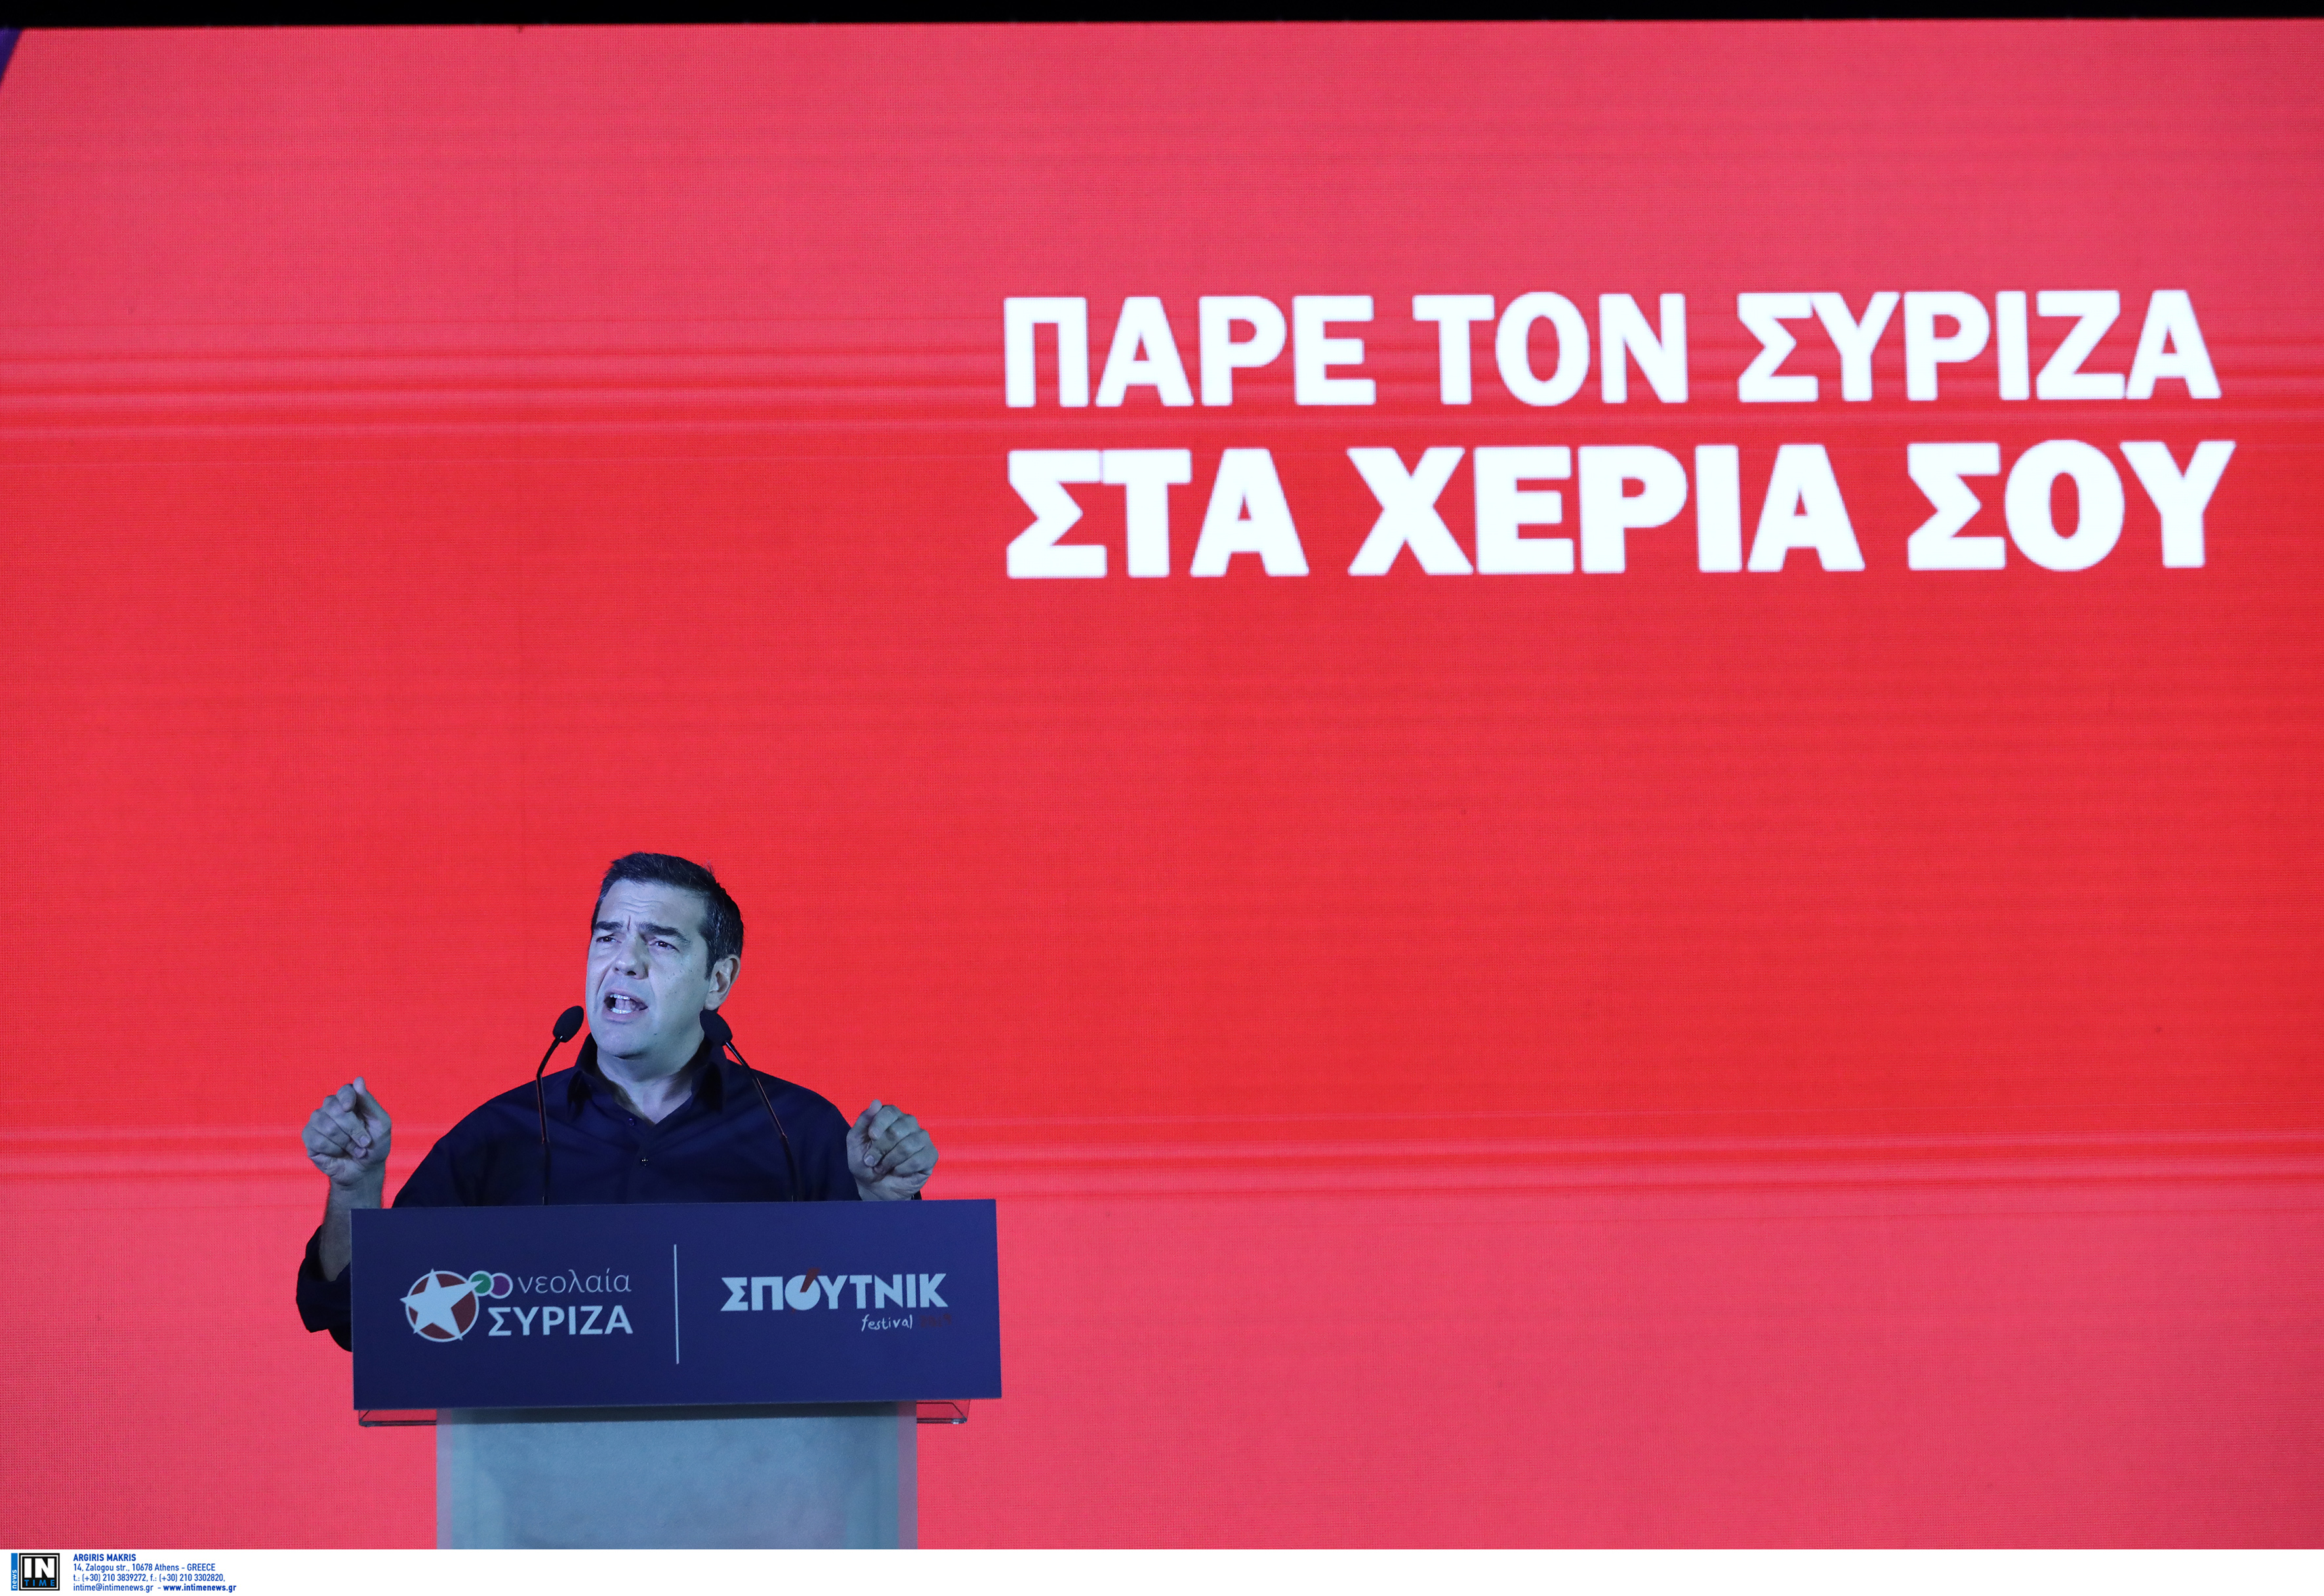 Τσίπρας: Πάρτε τον ΣΥΡΙΖΑ στα χέρια σας!